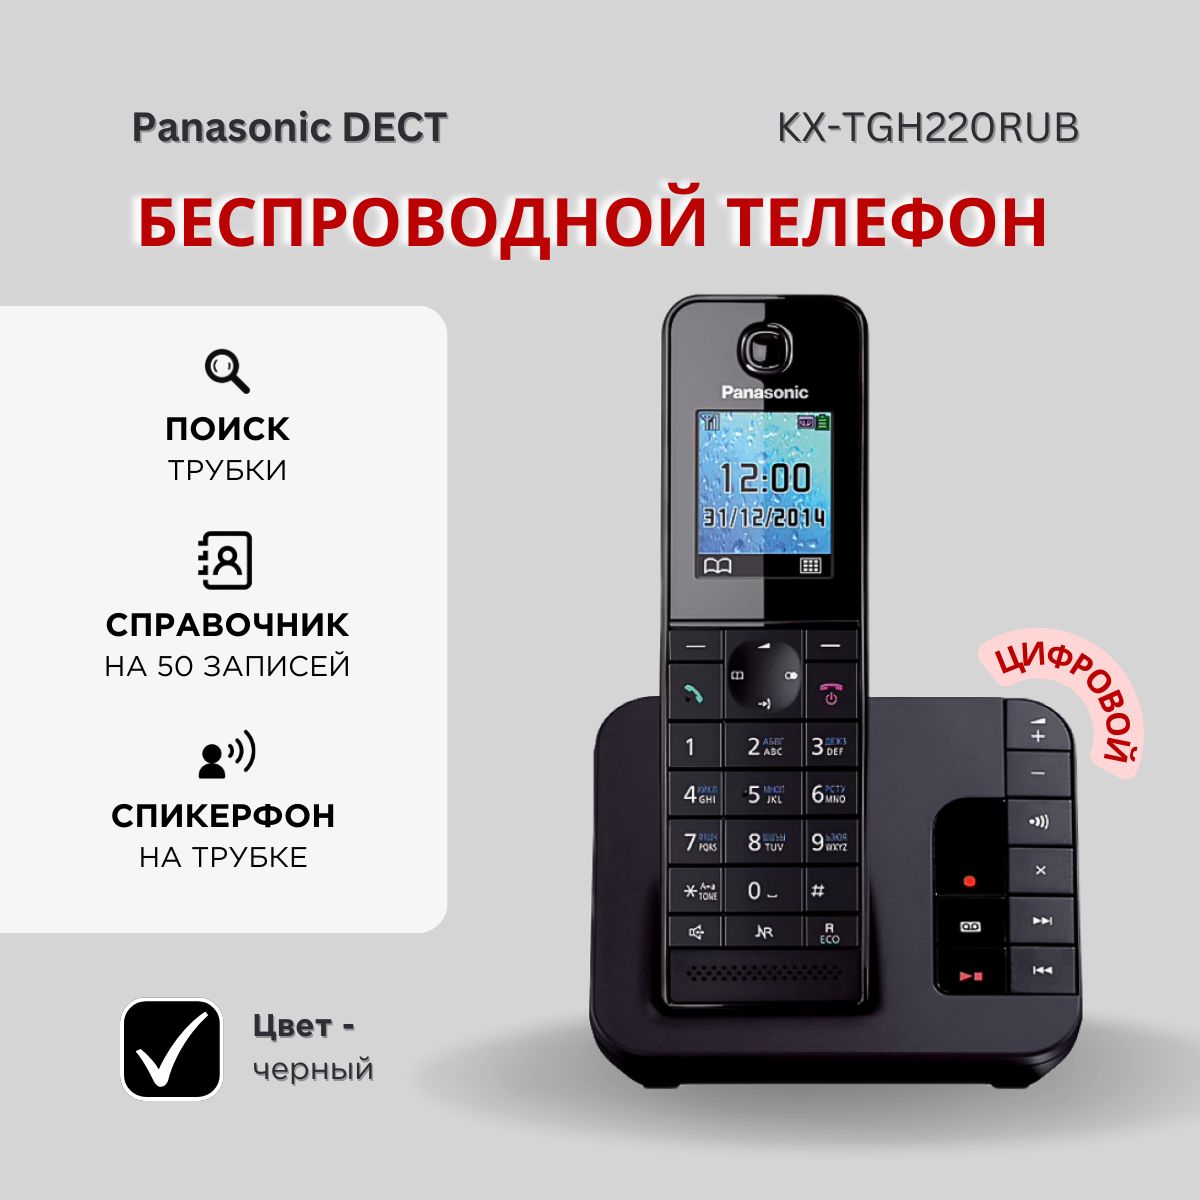 РадиотелефондомашнийPanasonicKX-TGH220RUB,черный